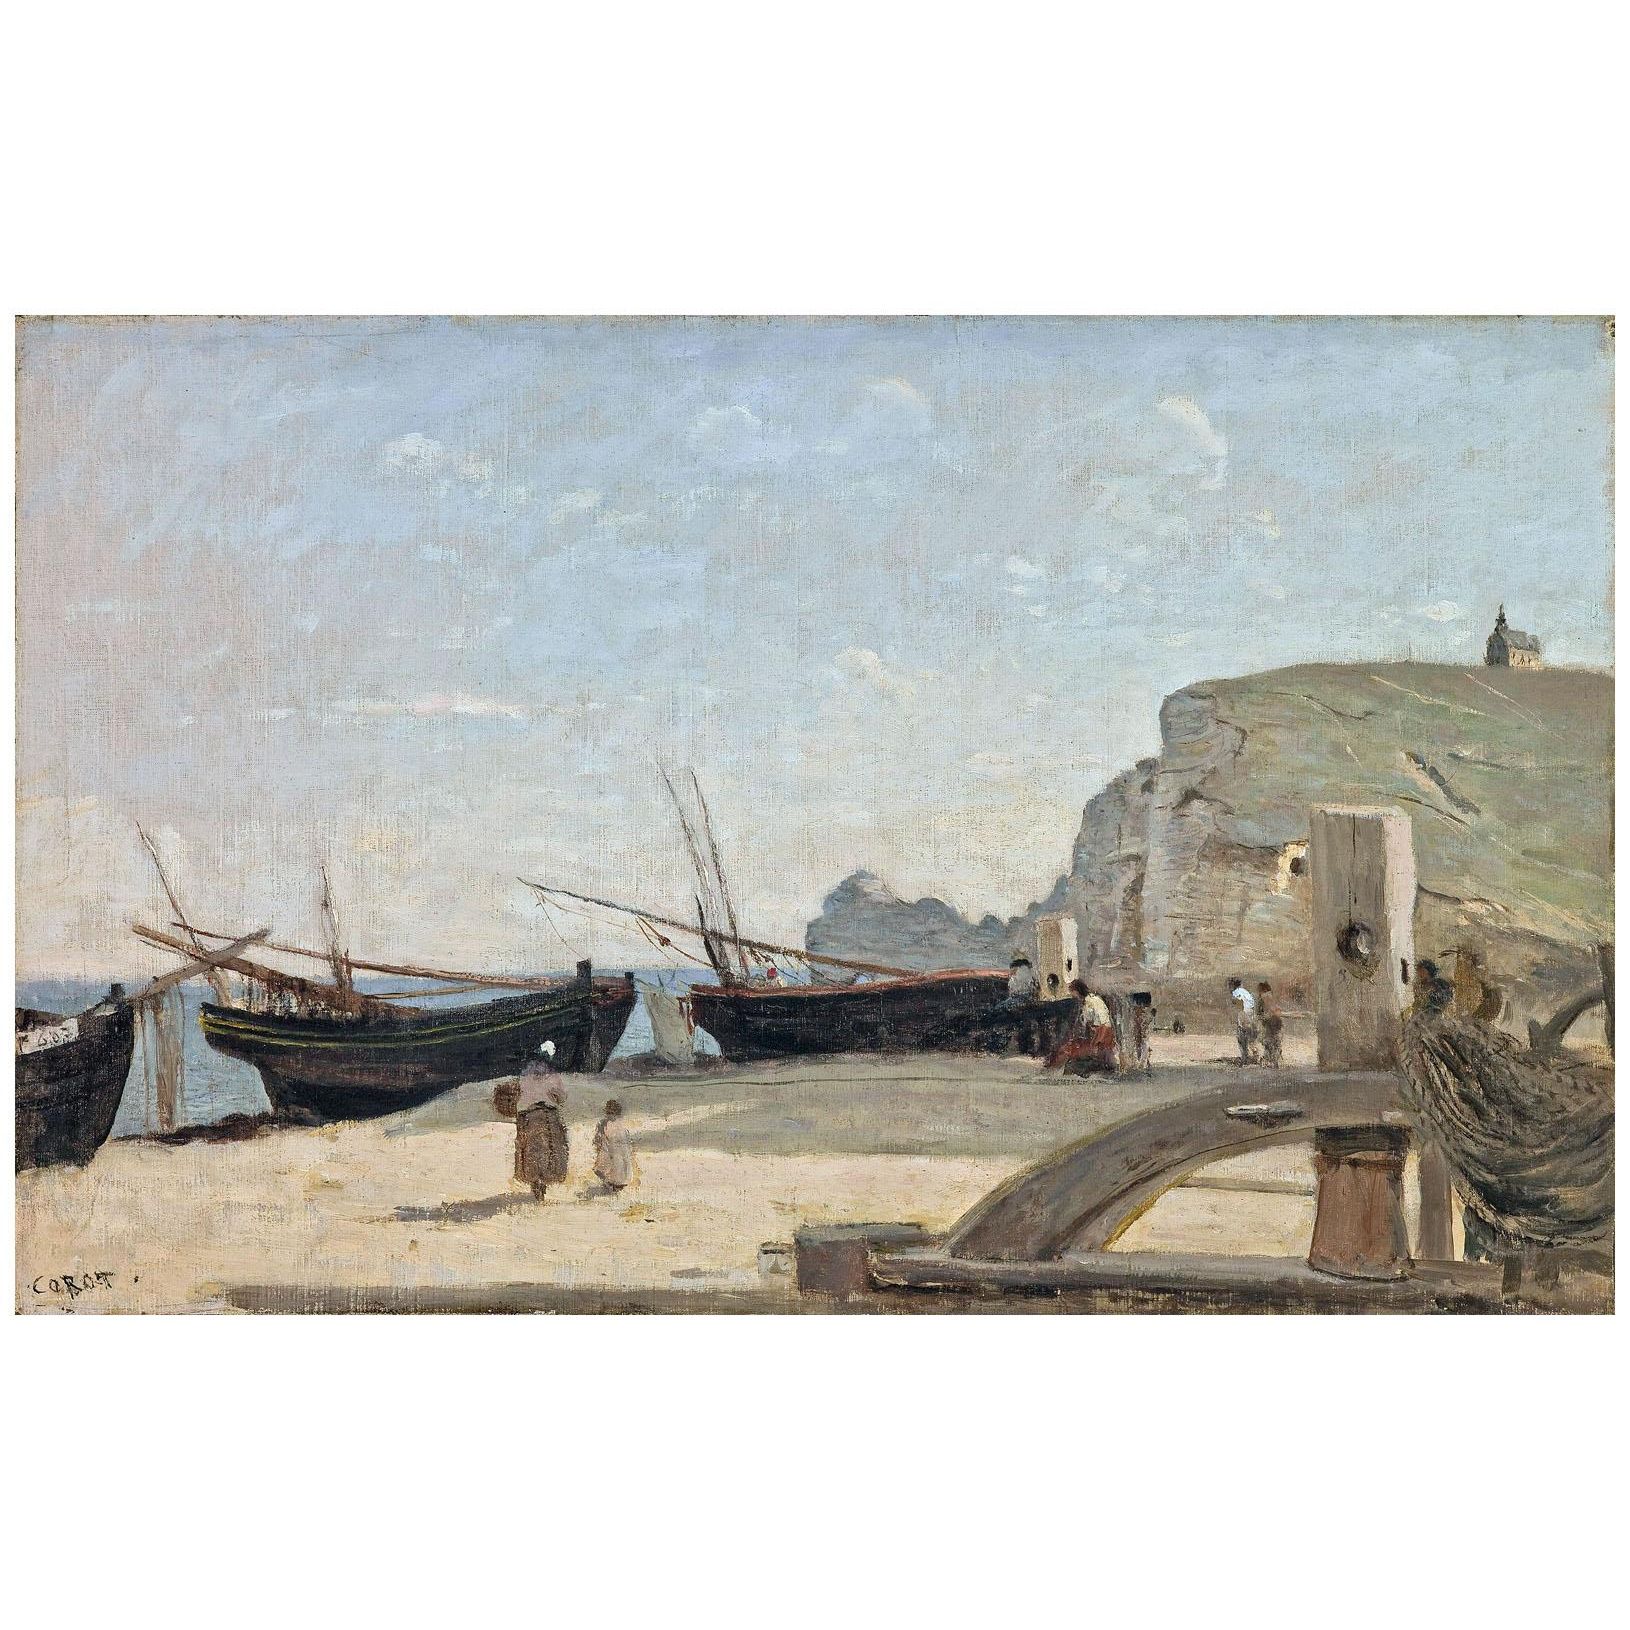 Camille Corot. La Plage, Étretat. 1872. Saint Louis Art Museum